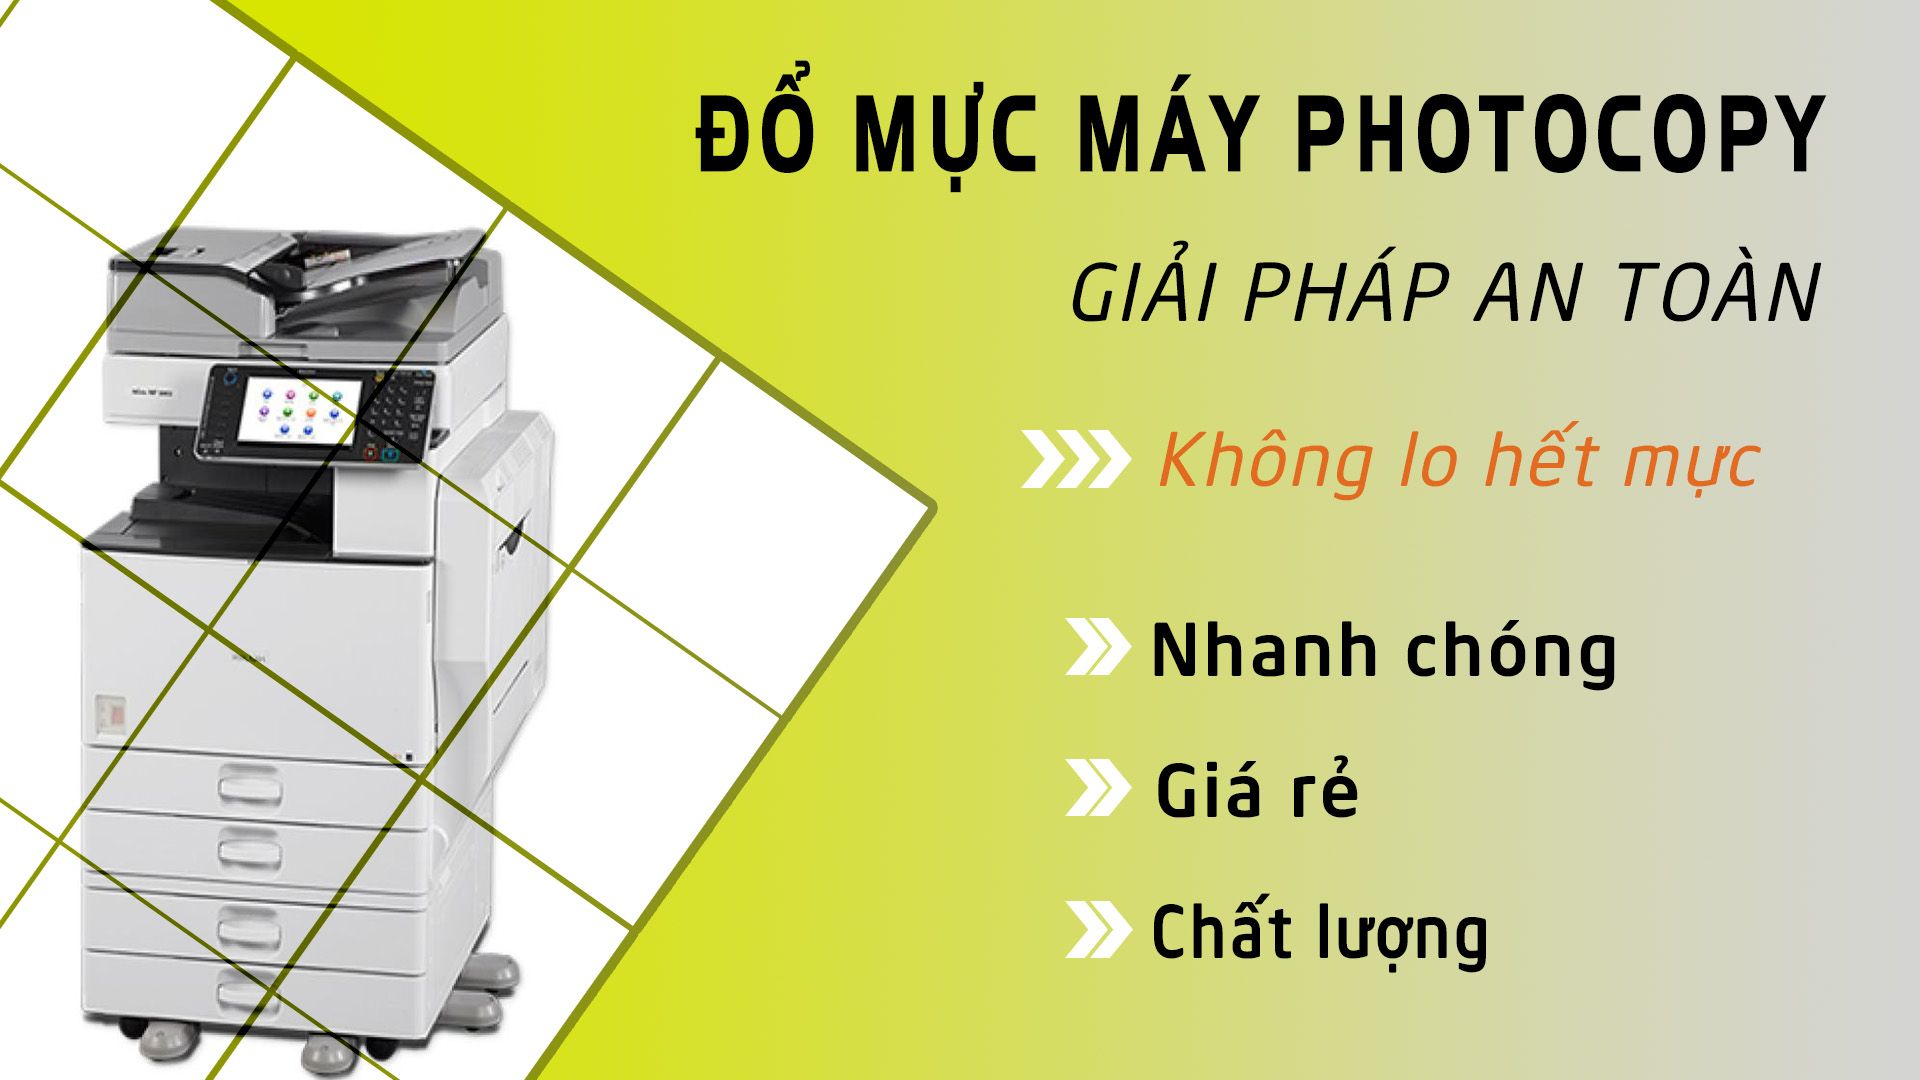 Ánh Sao Việt – Địa chỉ thay mực máy photocopy giá rẻ tại quận 5 tốt nhất